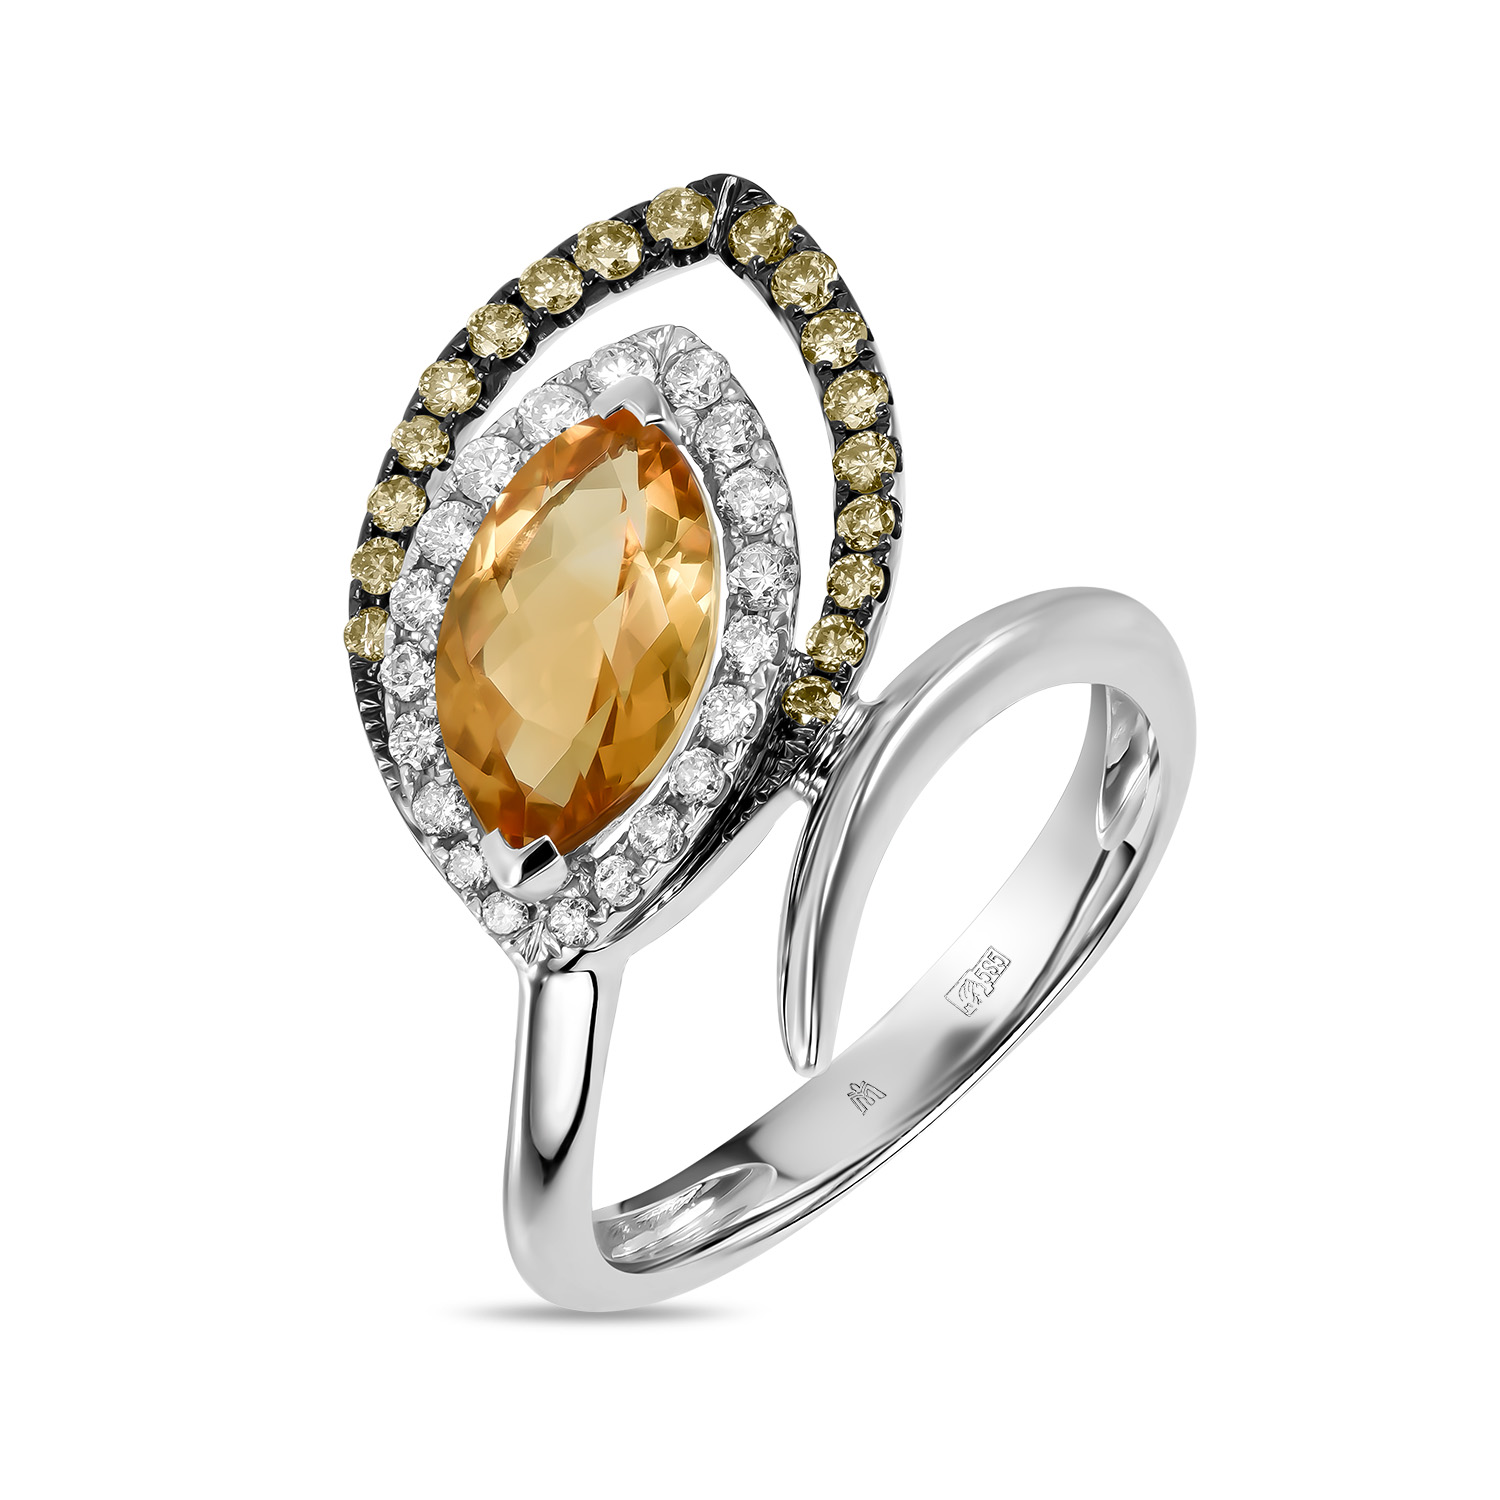 Кольца МЮЗ Золотое кольцо с цитрином и бриллиантами кольца мюз золотое кольцо с аметистом топазом цитрином бриллиантами и цветными бриллиантами